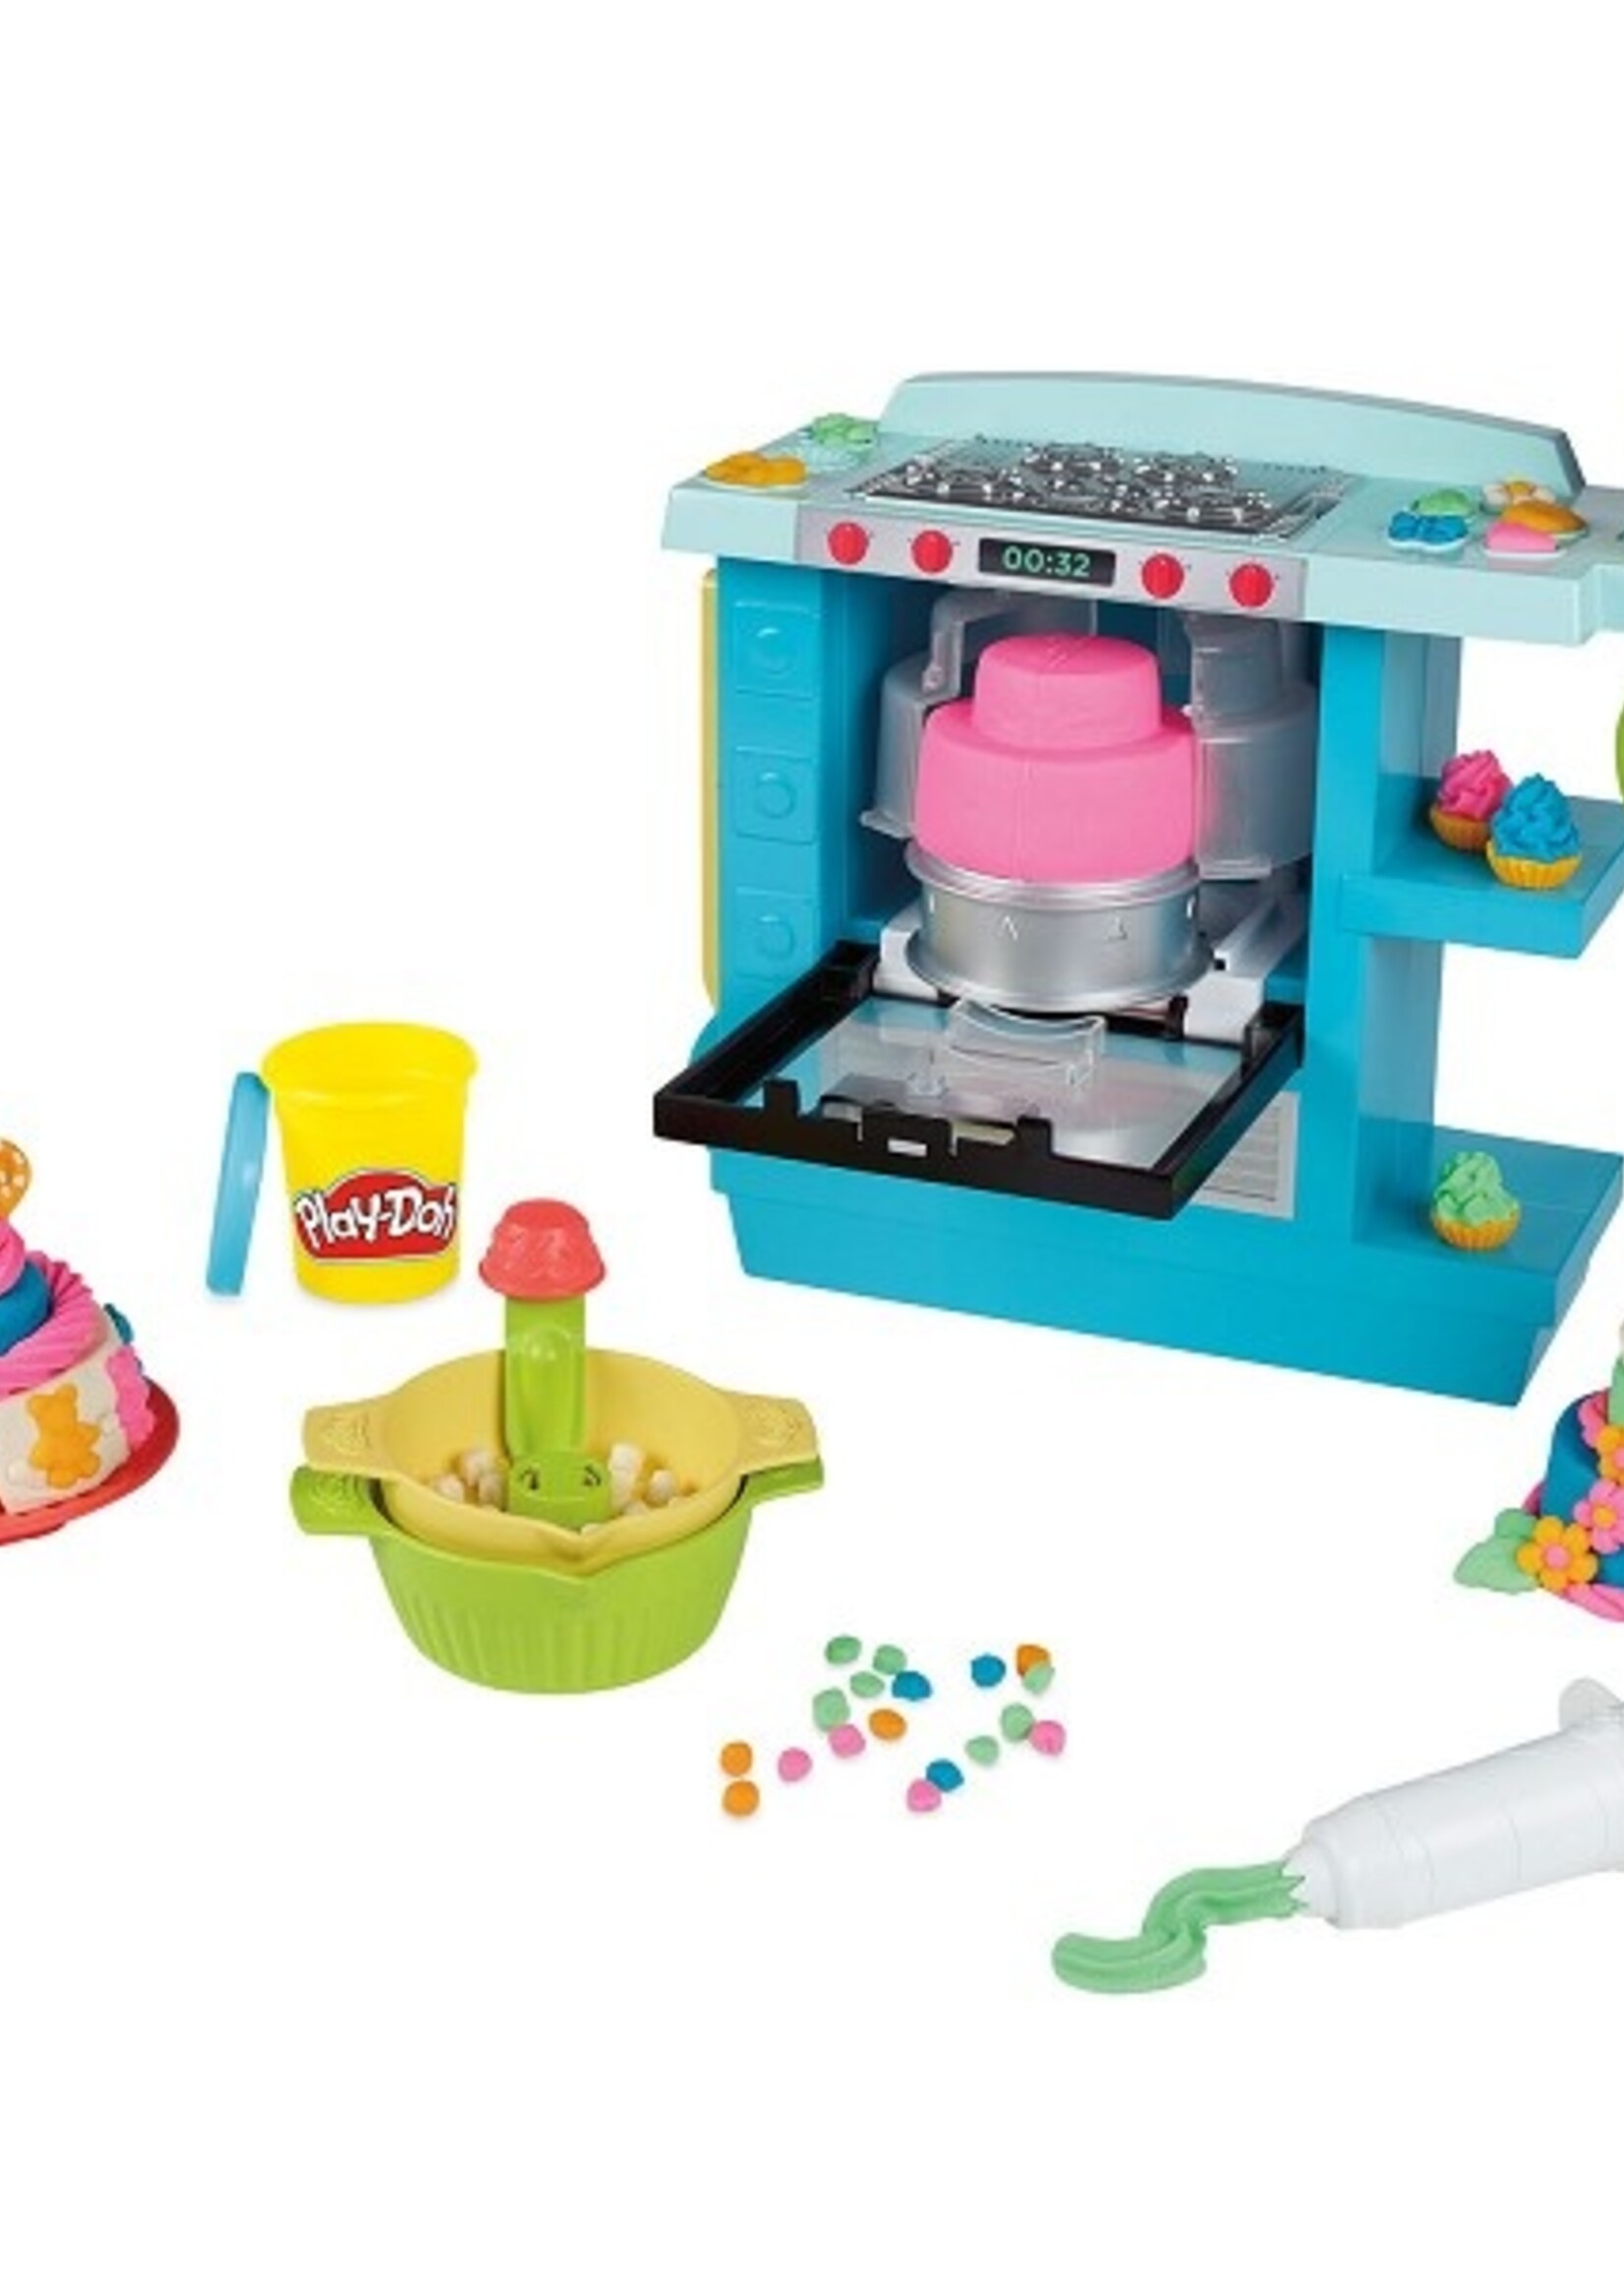 Hasbro Play-Doh Prachtige taarten oven speelset